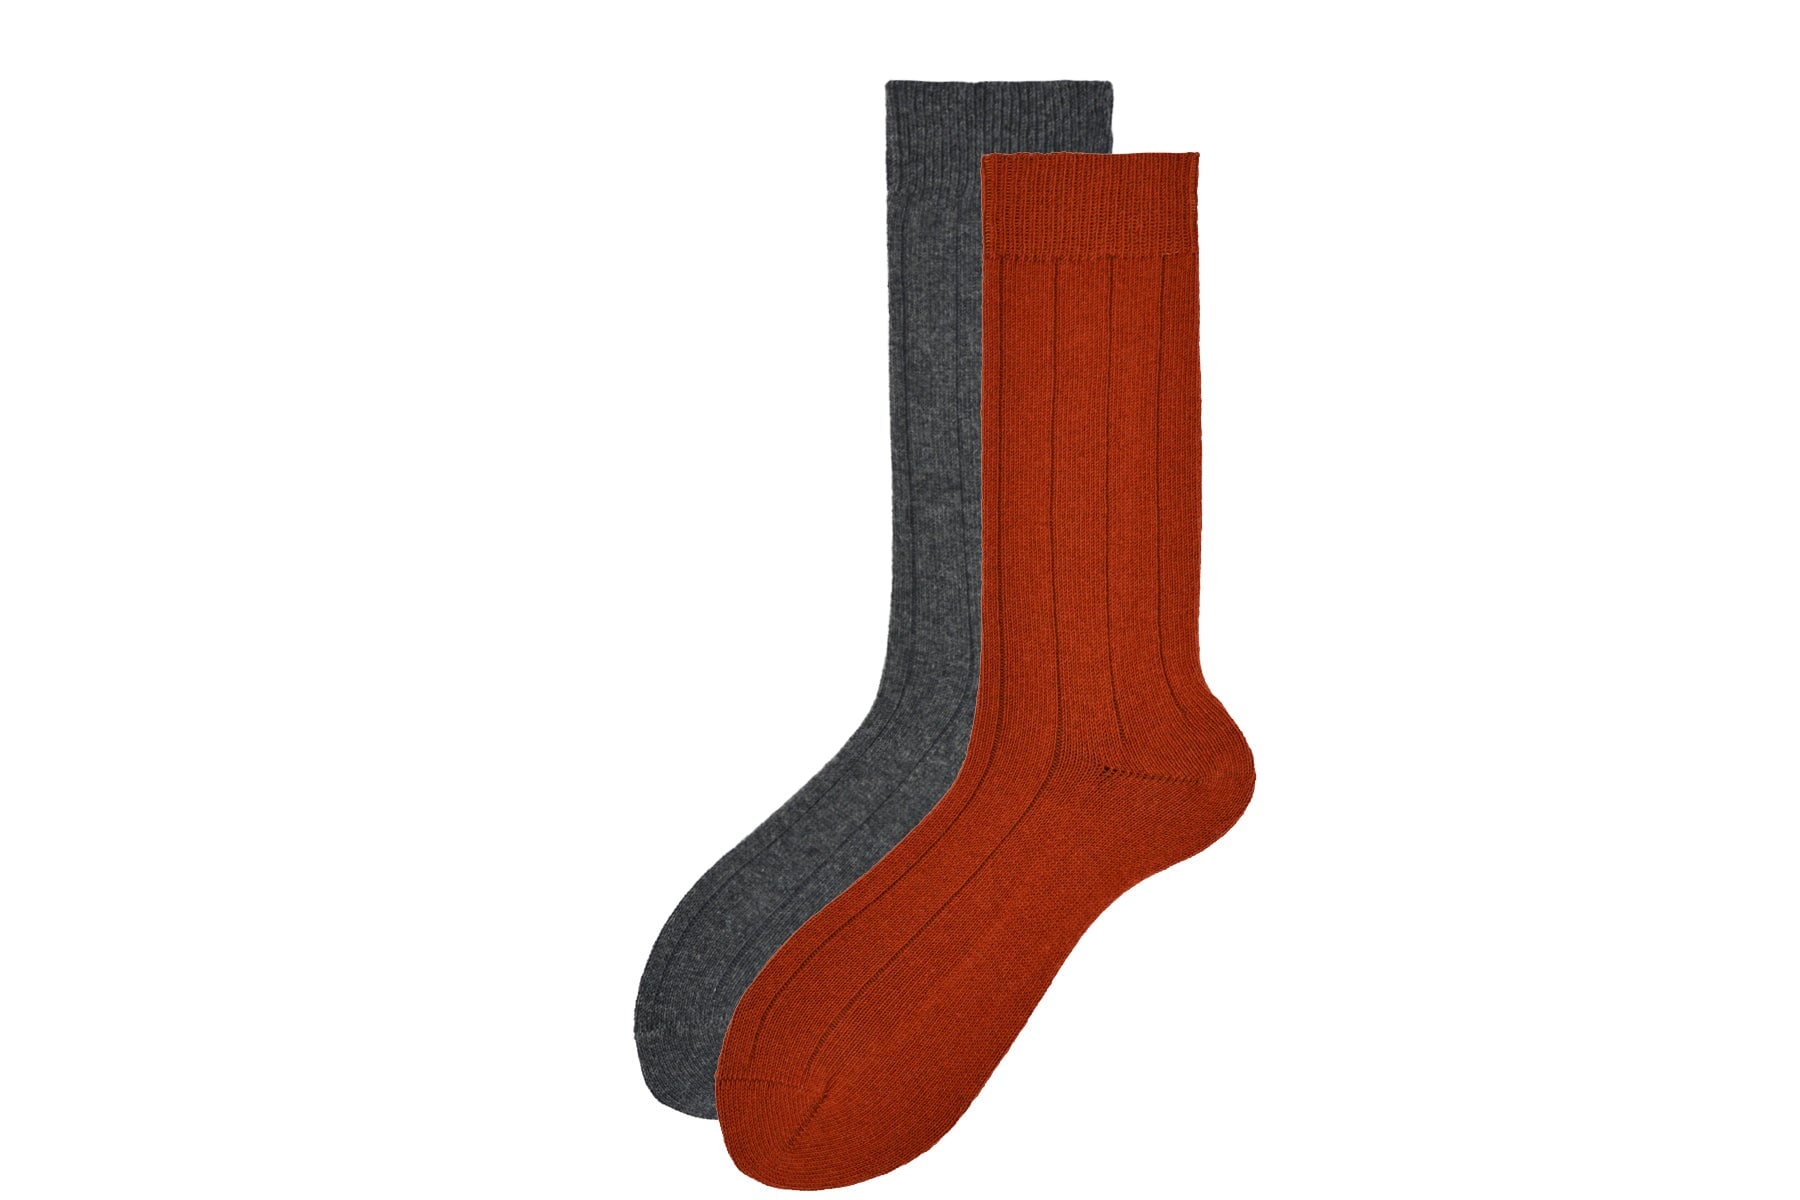 Herren Socken aus Merino Wolle in Ziegel - Duvet Herren Socken Alto Milano 